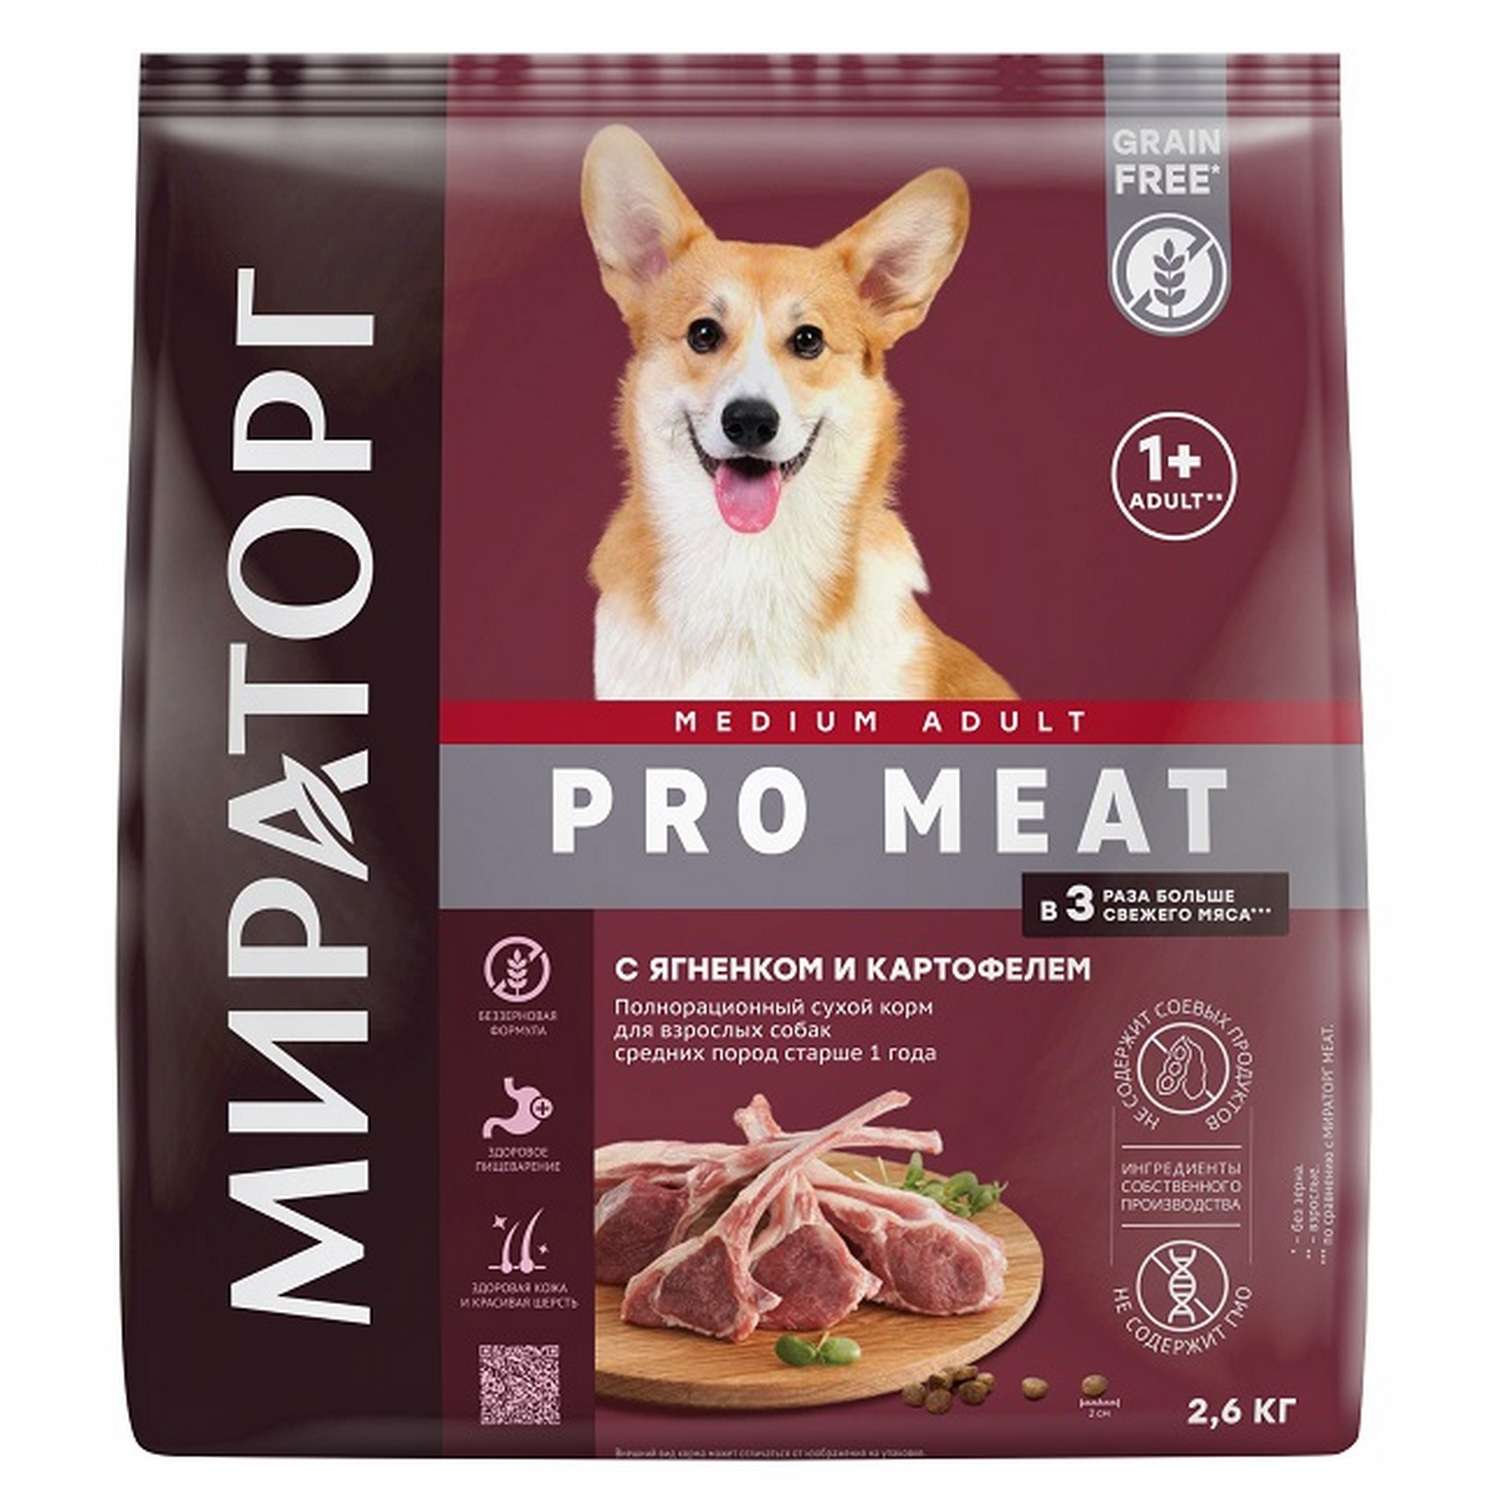 Полнорационный сухой корм WINNER Pro Meat с ягненком и картофелем для взрослых собак средних пород старше 1 года 2.6 кг - фото 1